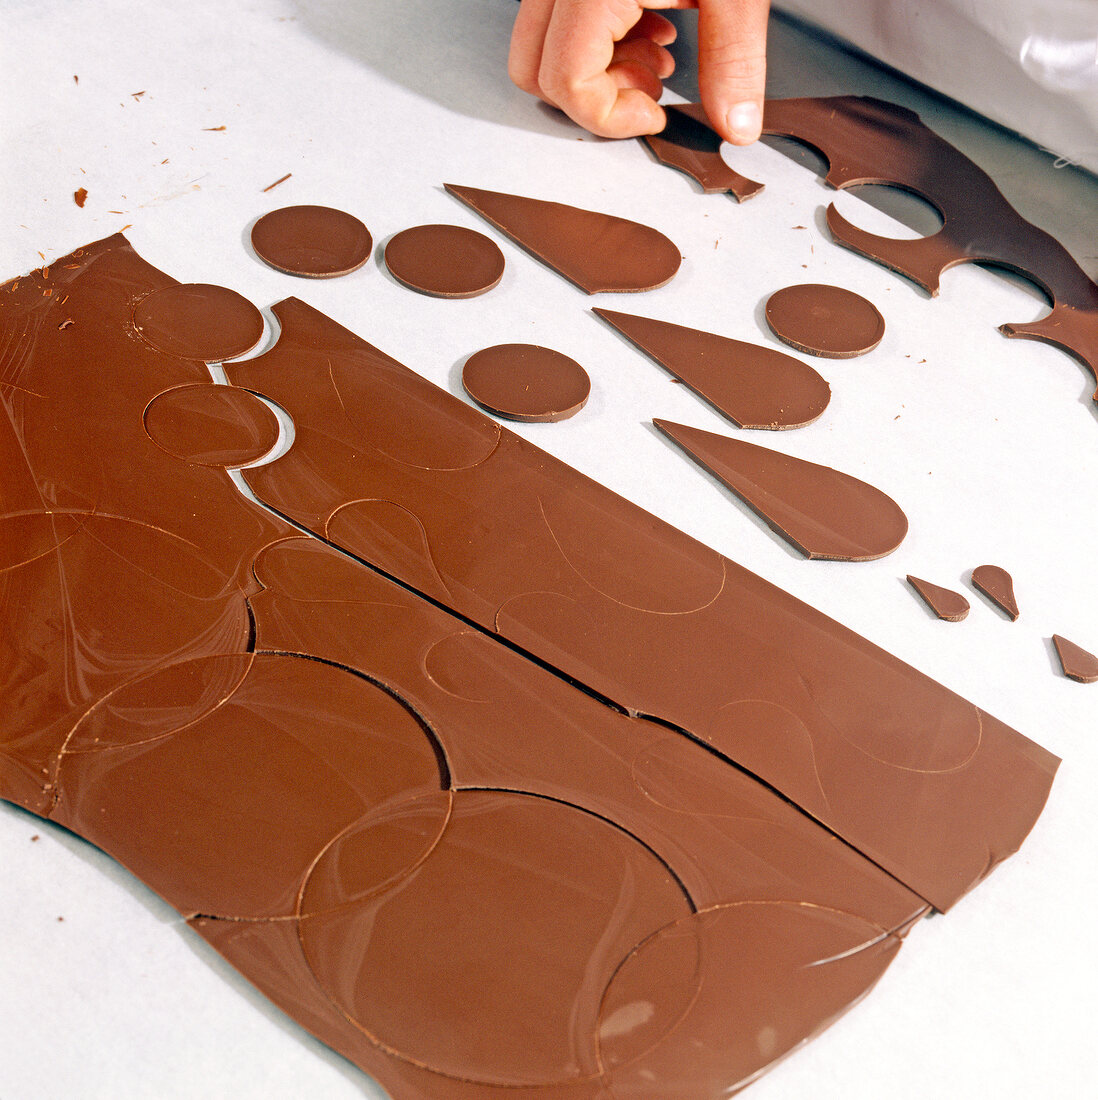 Buch der Schokolade, Kuvertüre Step2: Schokoformen vom Papier lösen